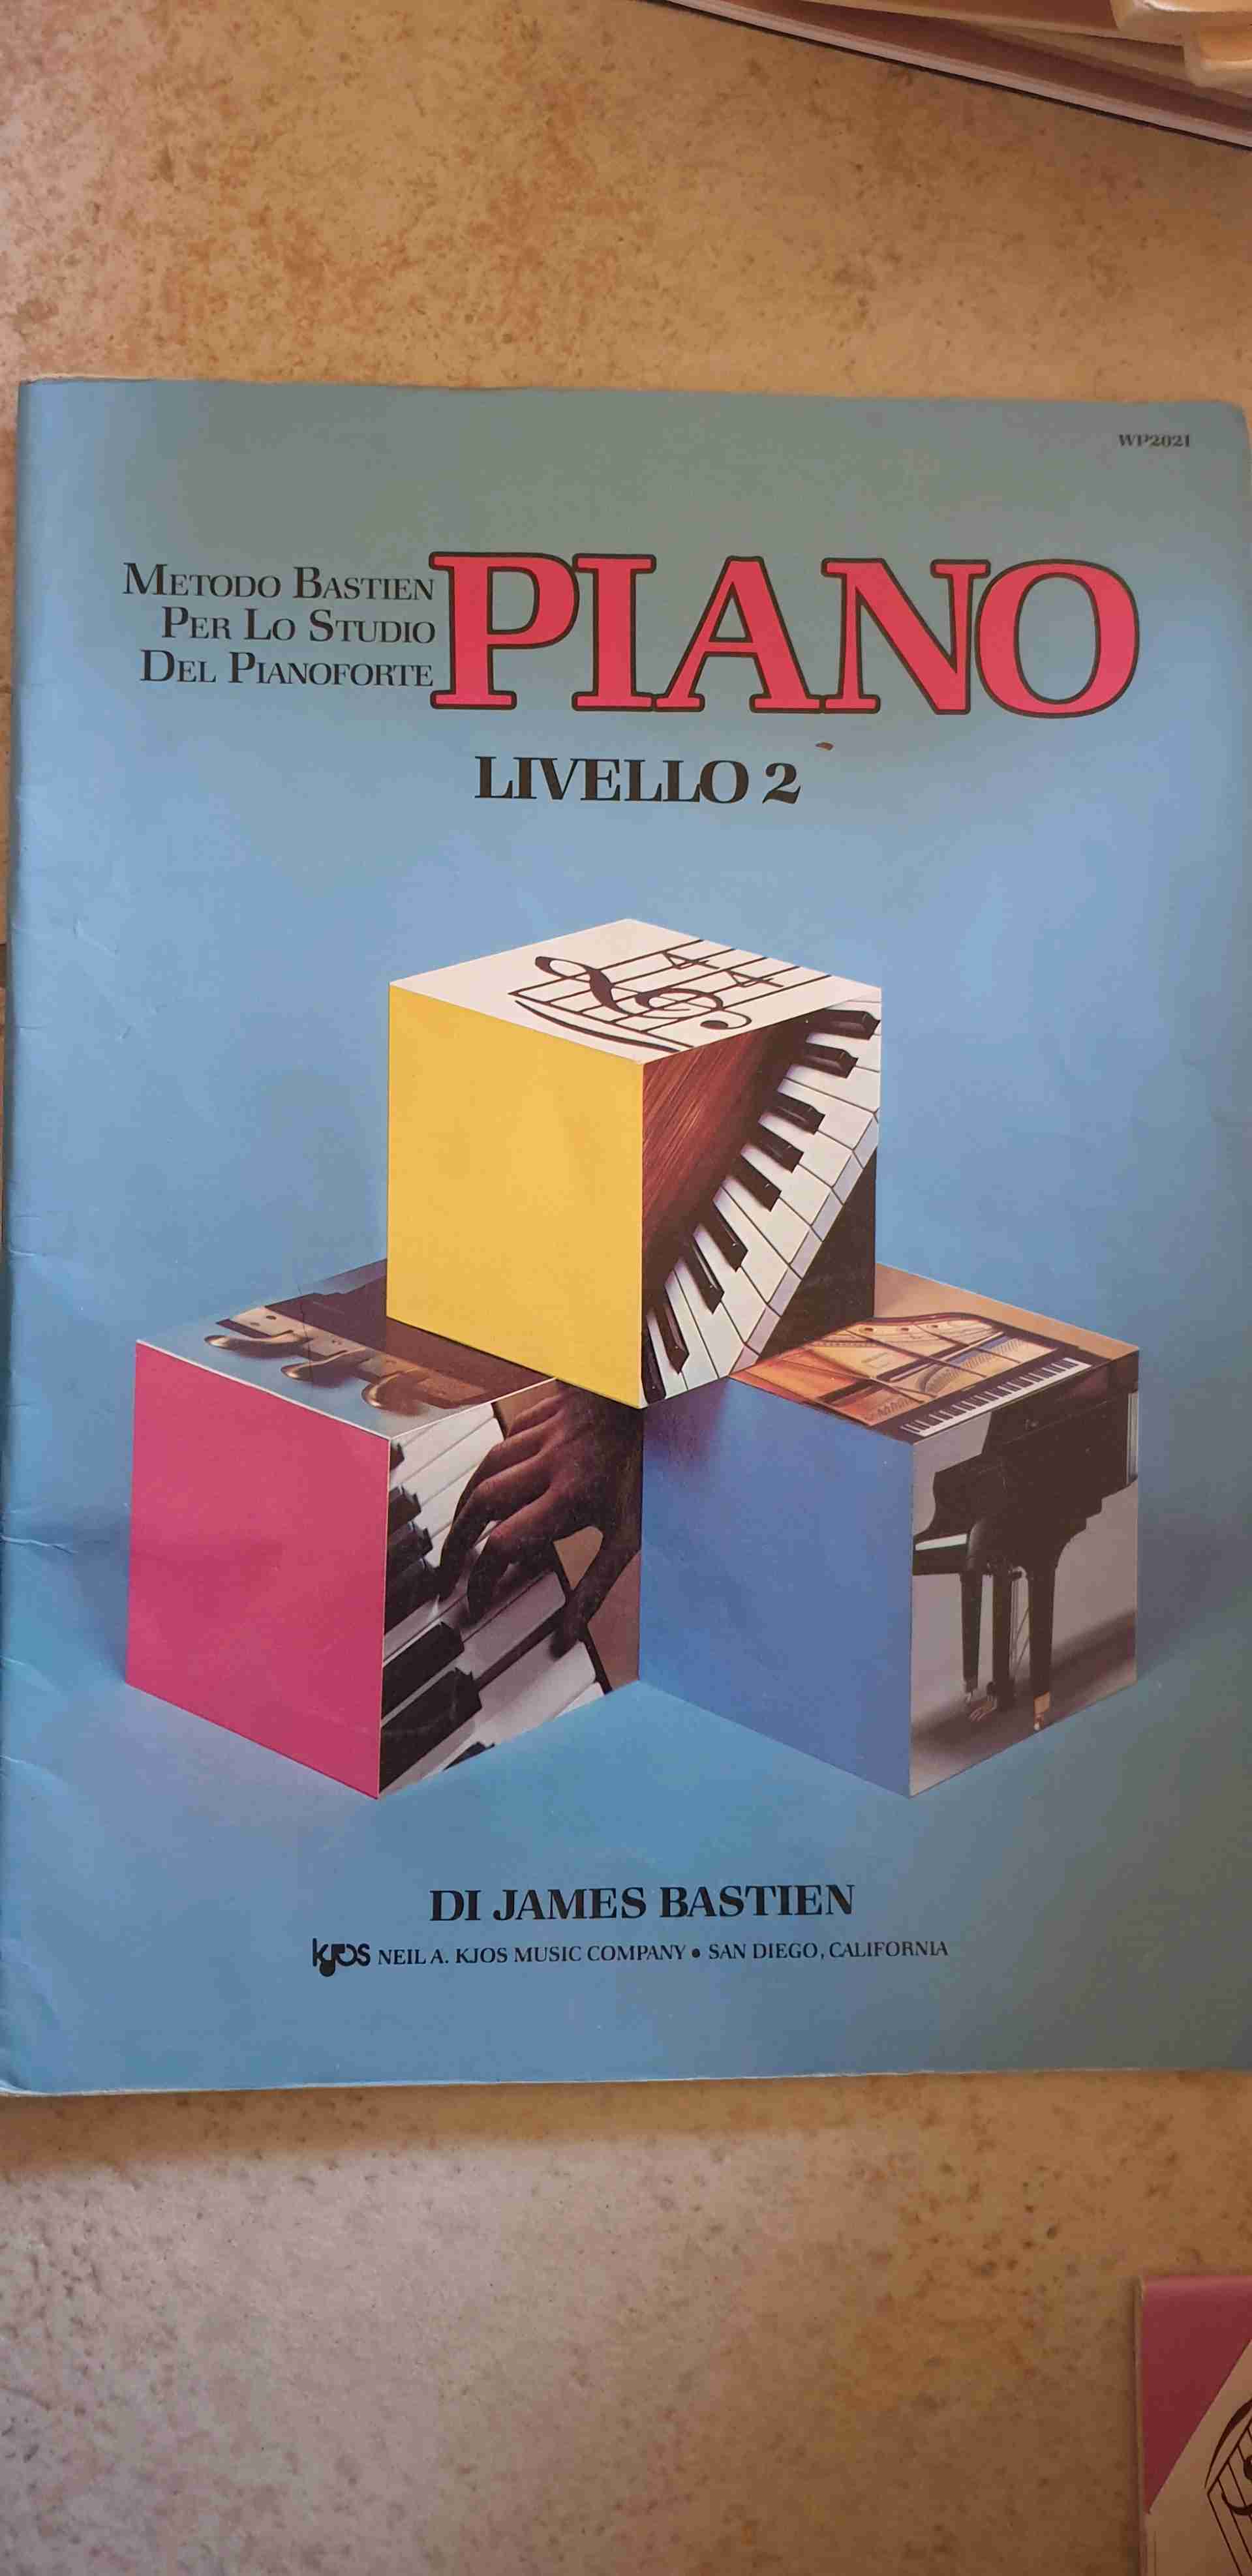 Metodo Bastien per lo studio del pianoforte -piano- livello 2